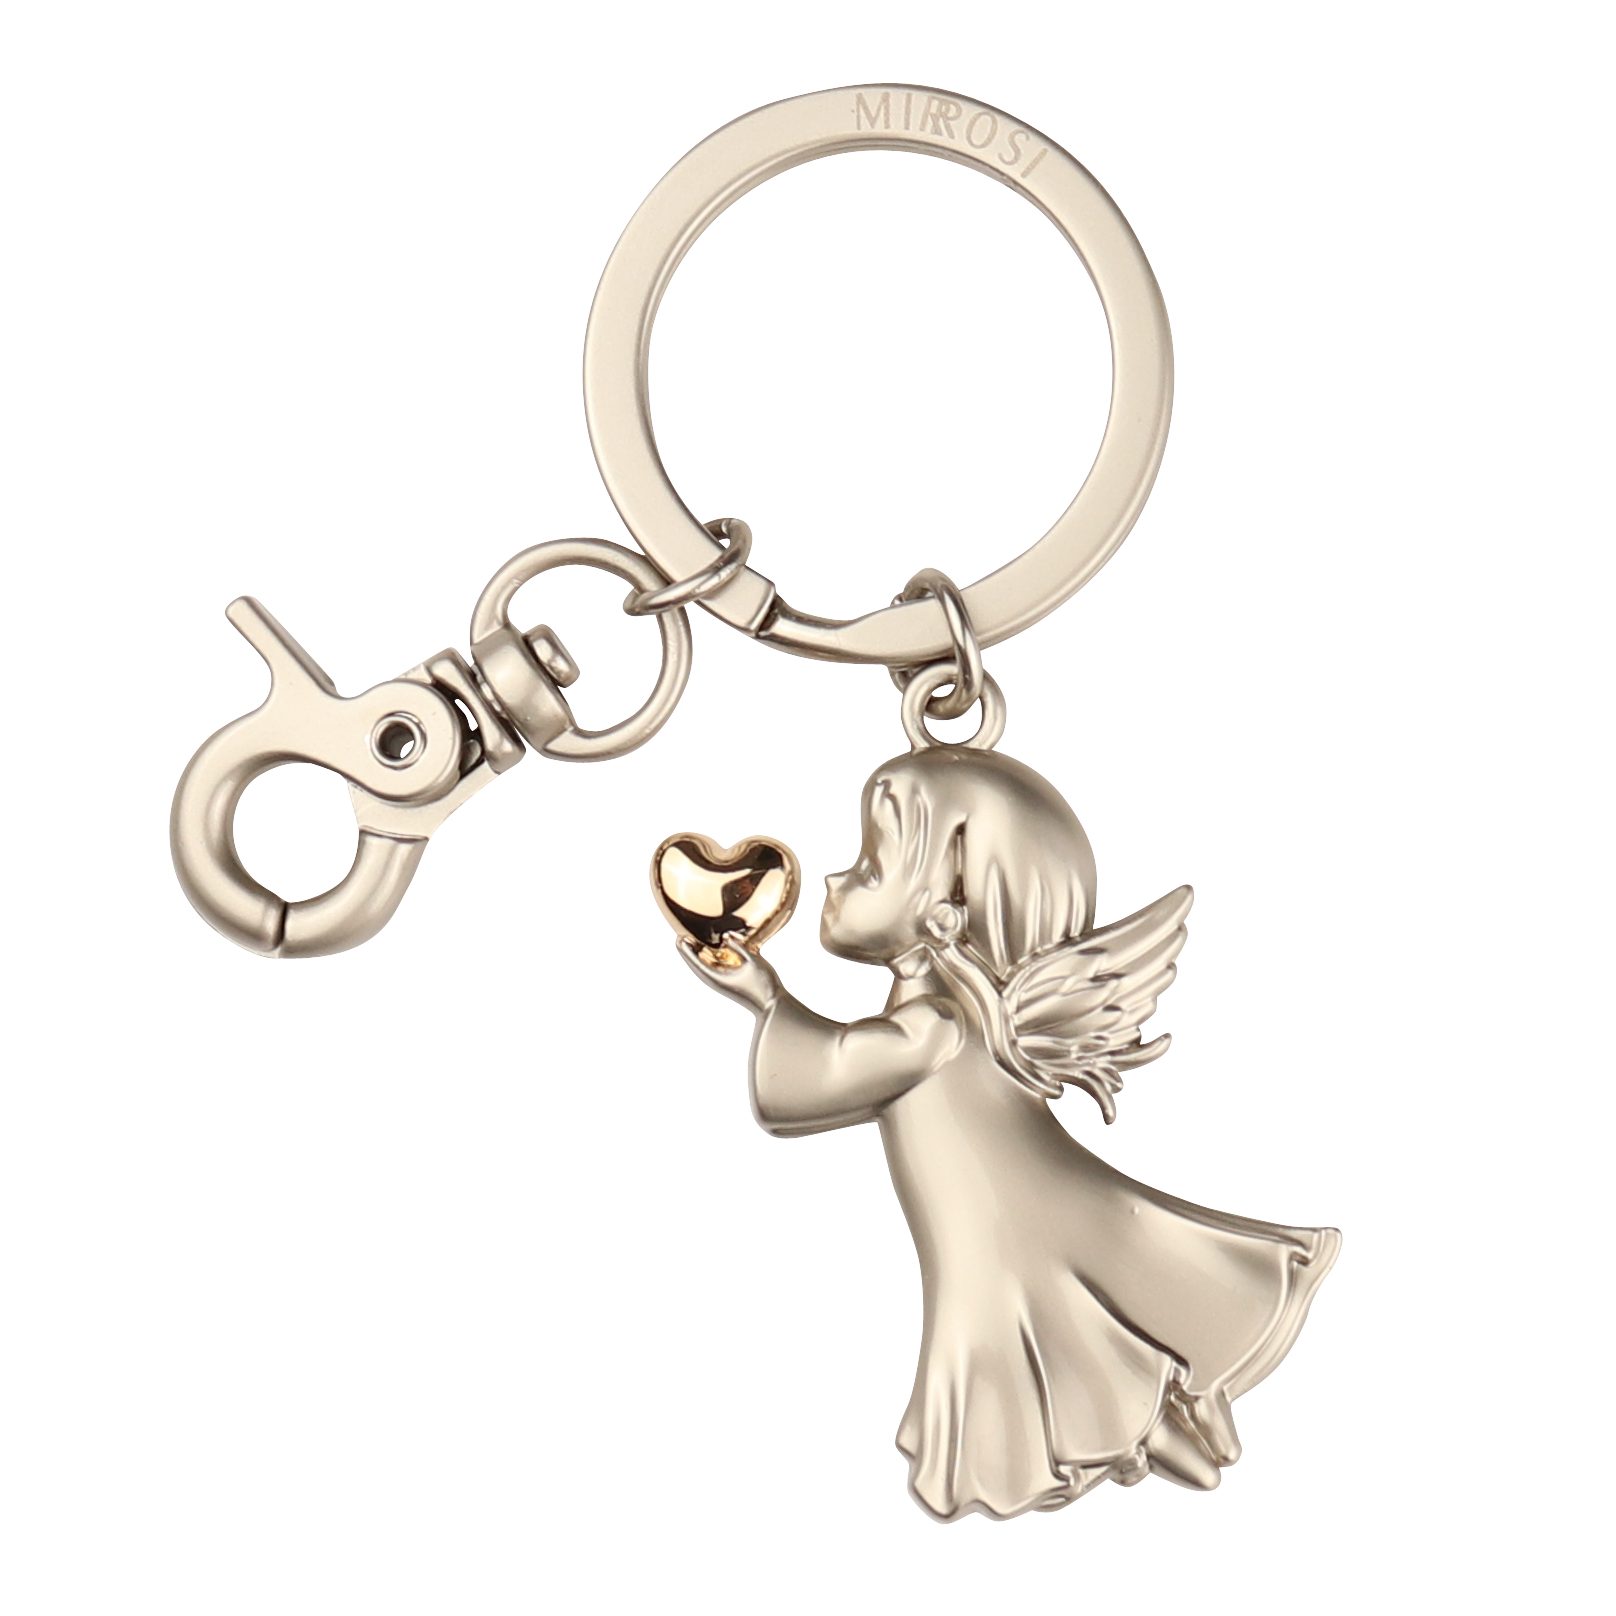 Schlüsselanhänger (Geschenk "Angela"mit Herzchen, mit praktischem Auto Karabinerhaken Glückbringer, Gold MIRROSI für Engel Freunden,Familie), Schutzengel